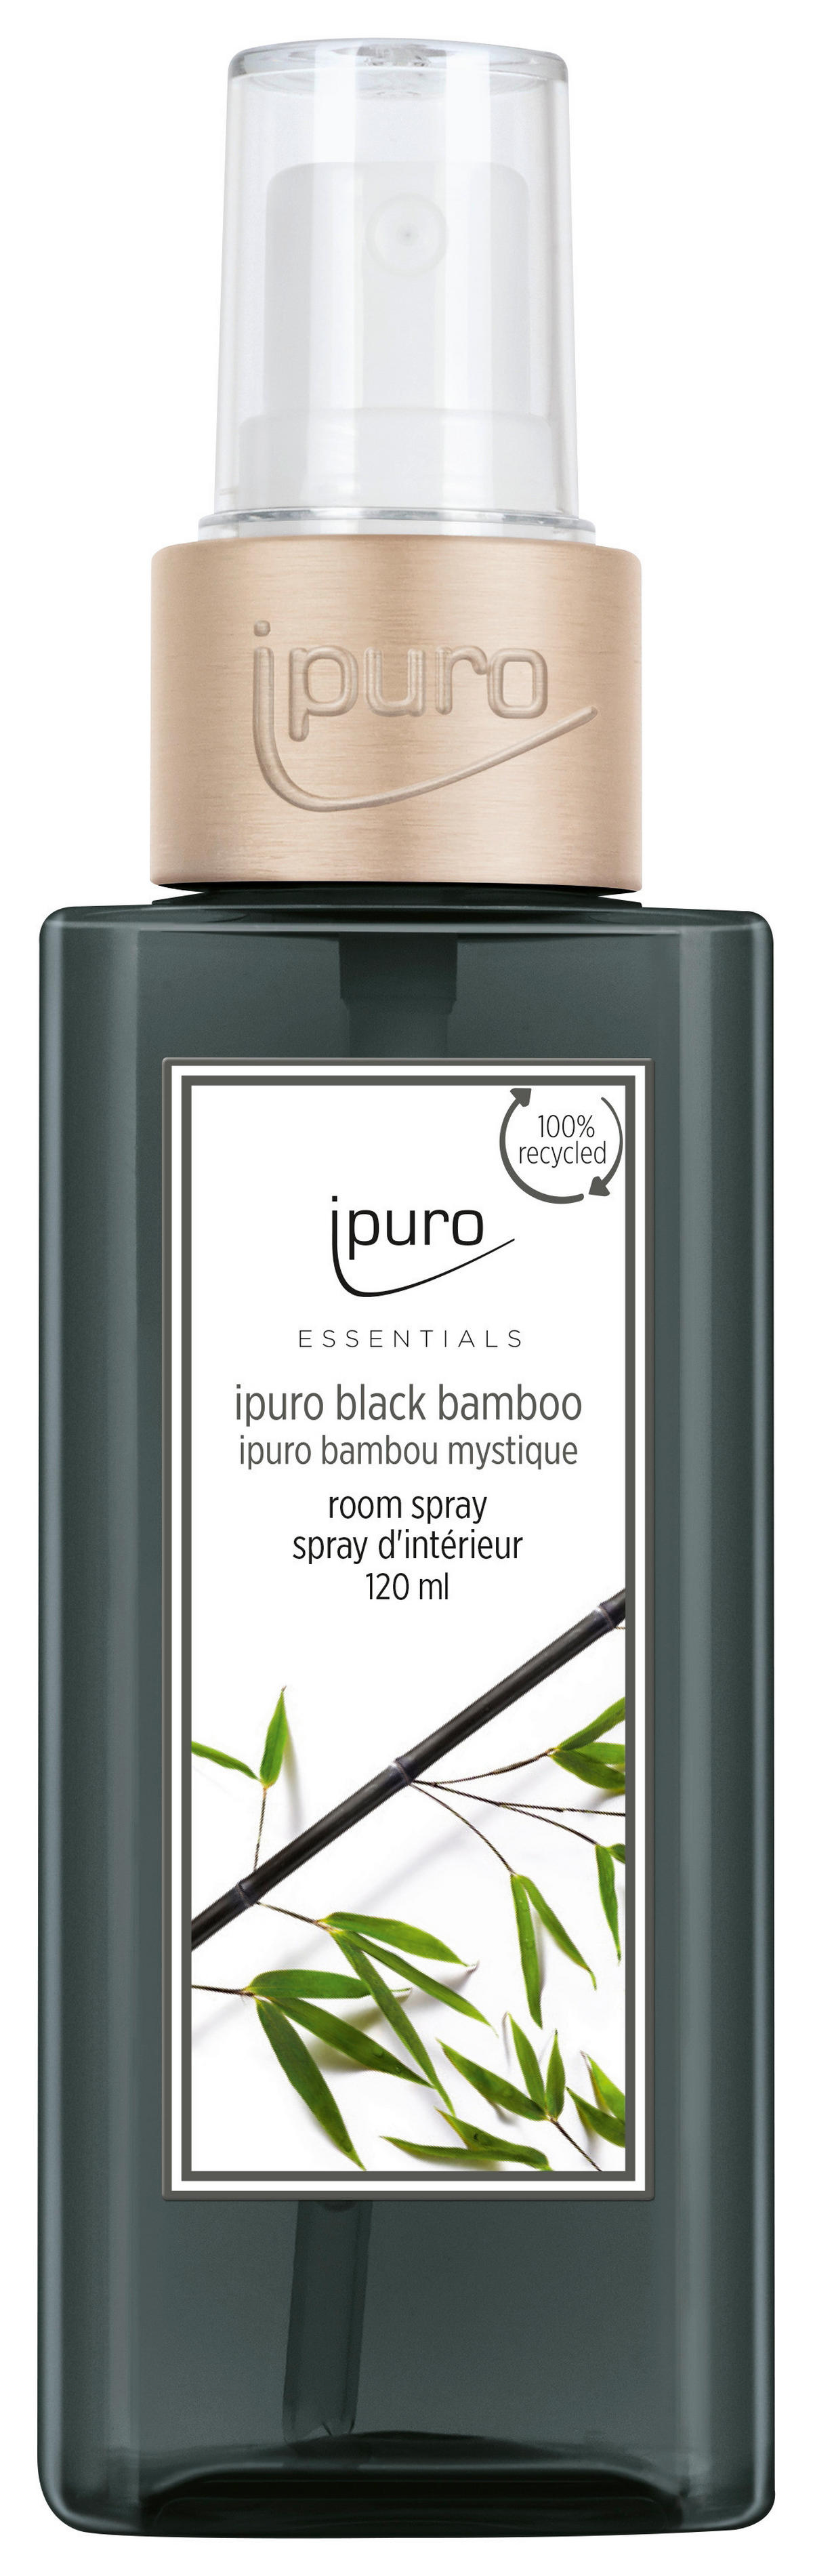 Ipuro RAUMSPRAY Essentials Black Bamboo jetzt nur online ➤